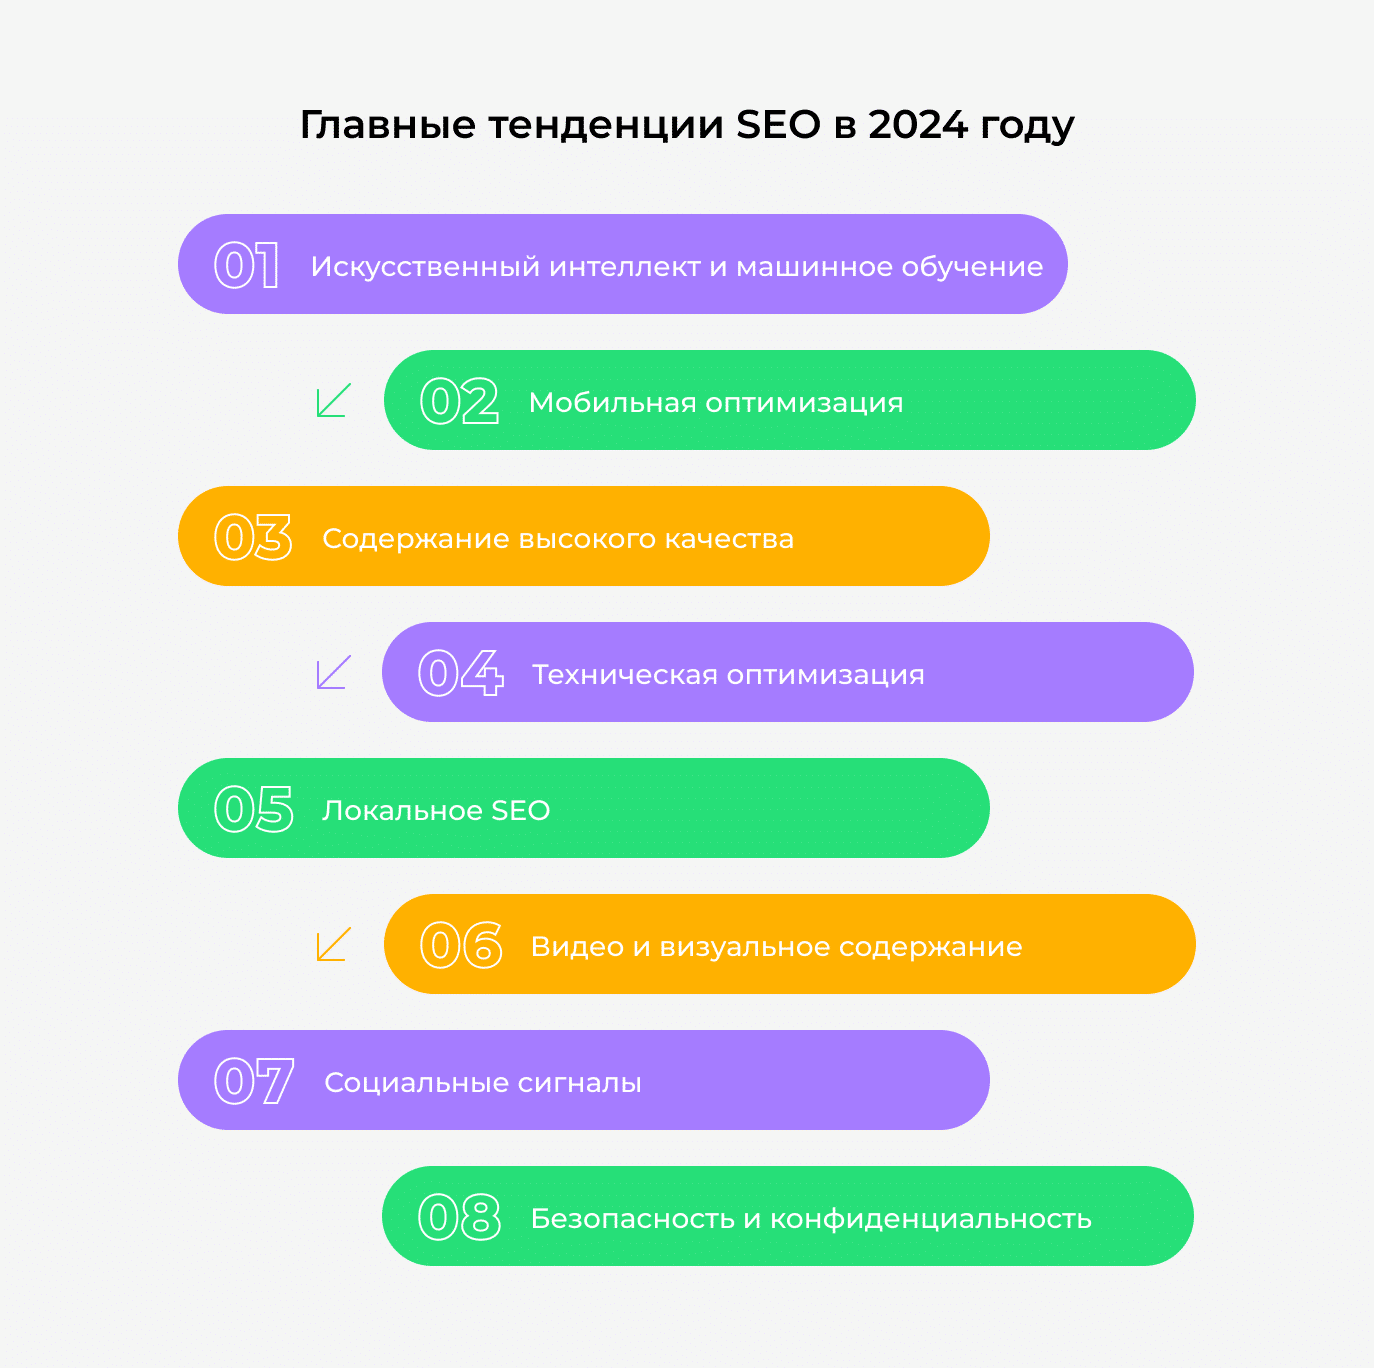 Главные тенденции SEO в 2024 году